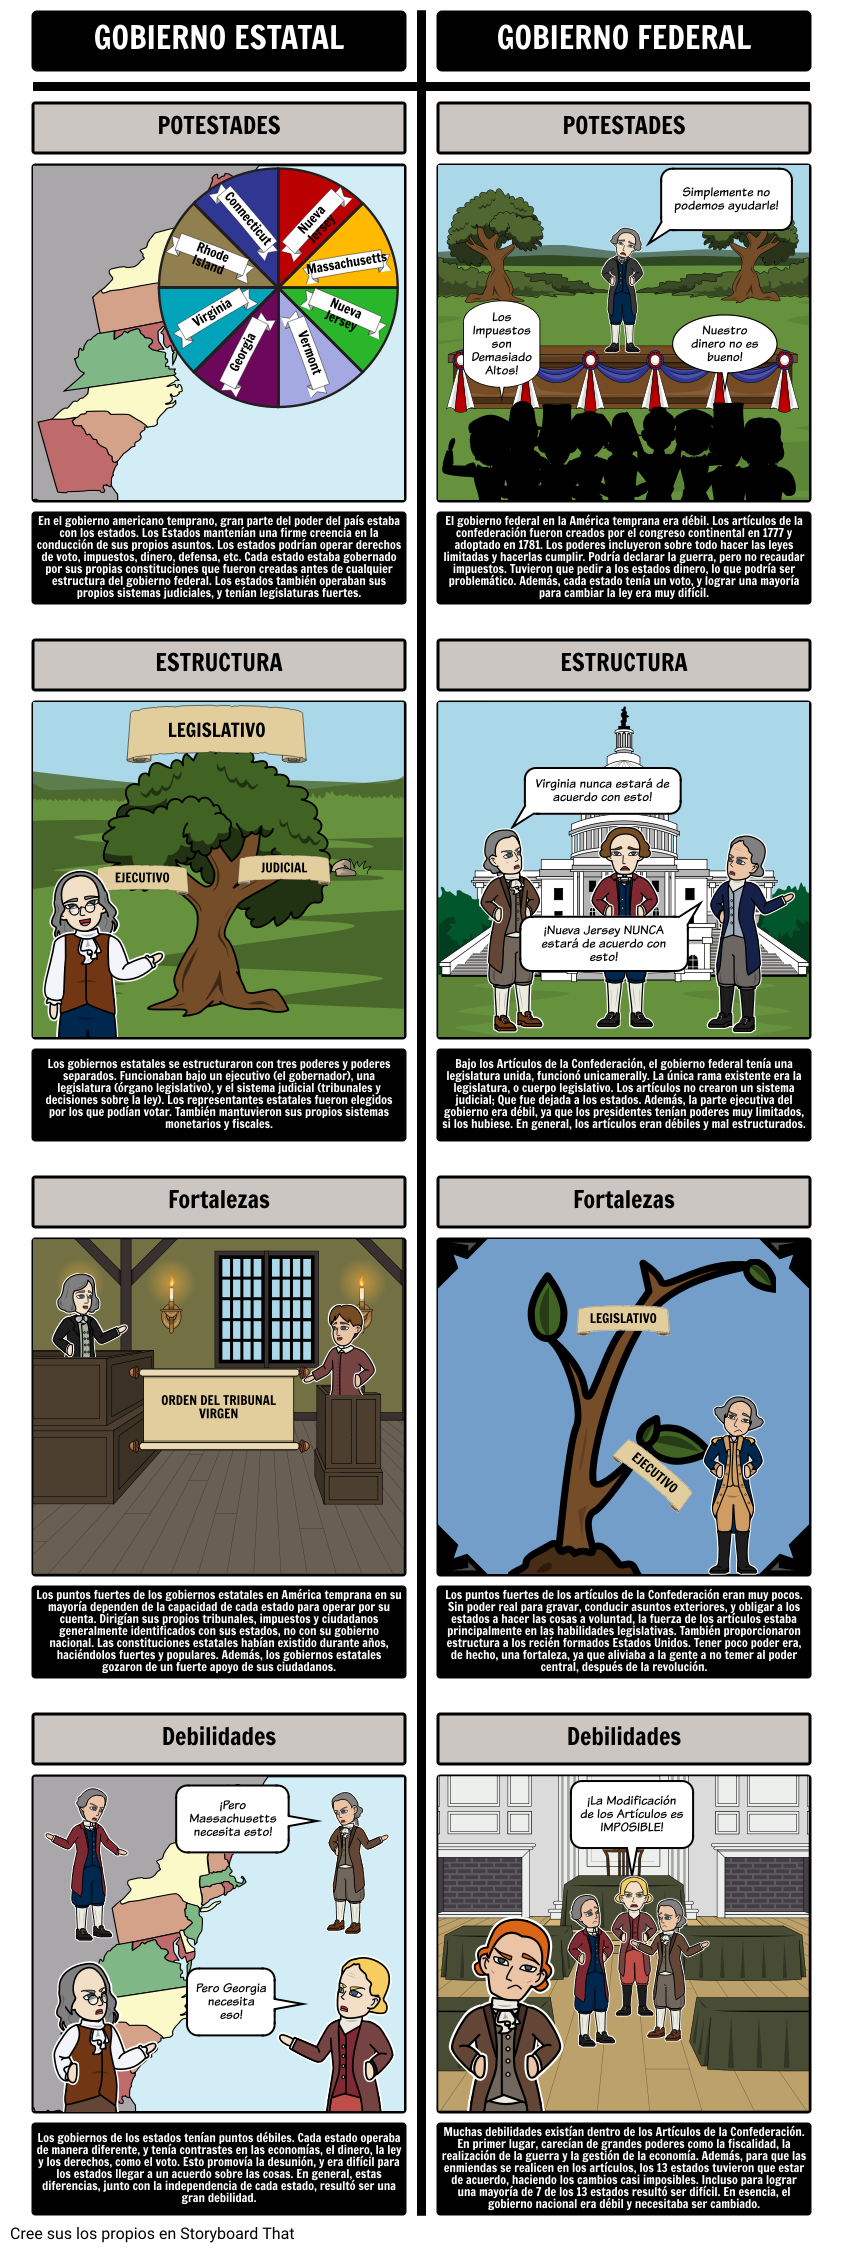 Federalismo - Gobiernos Estatales vs. Artículos de la Confederación